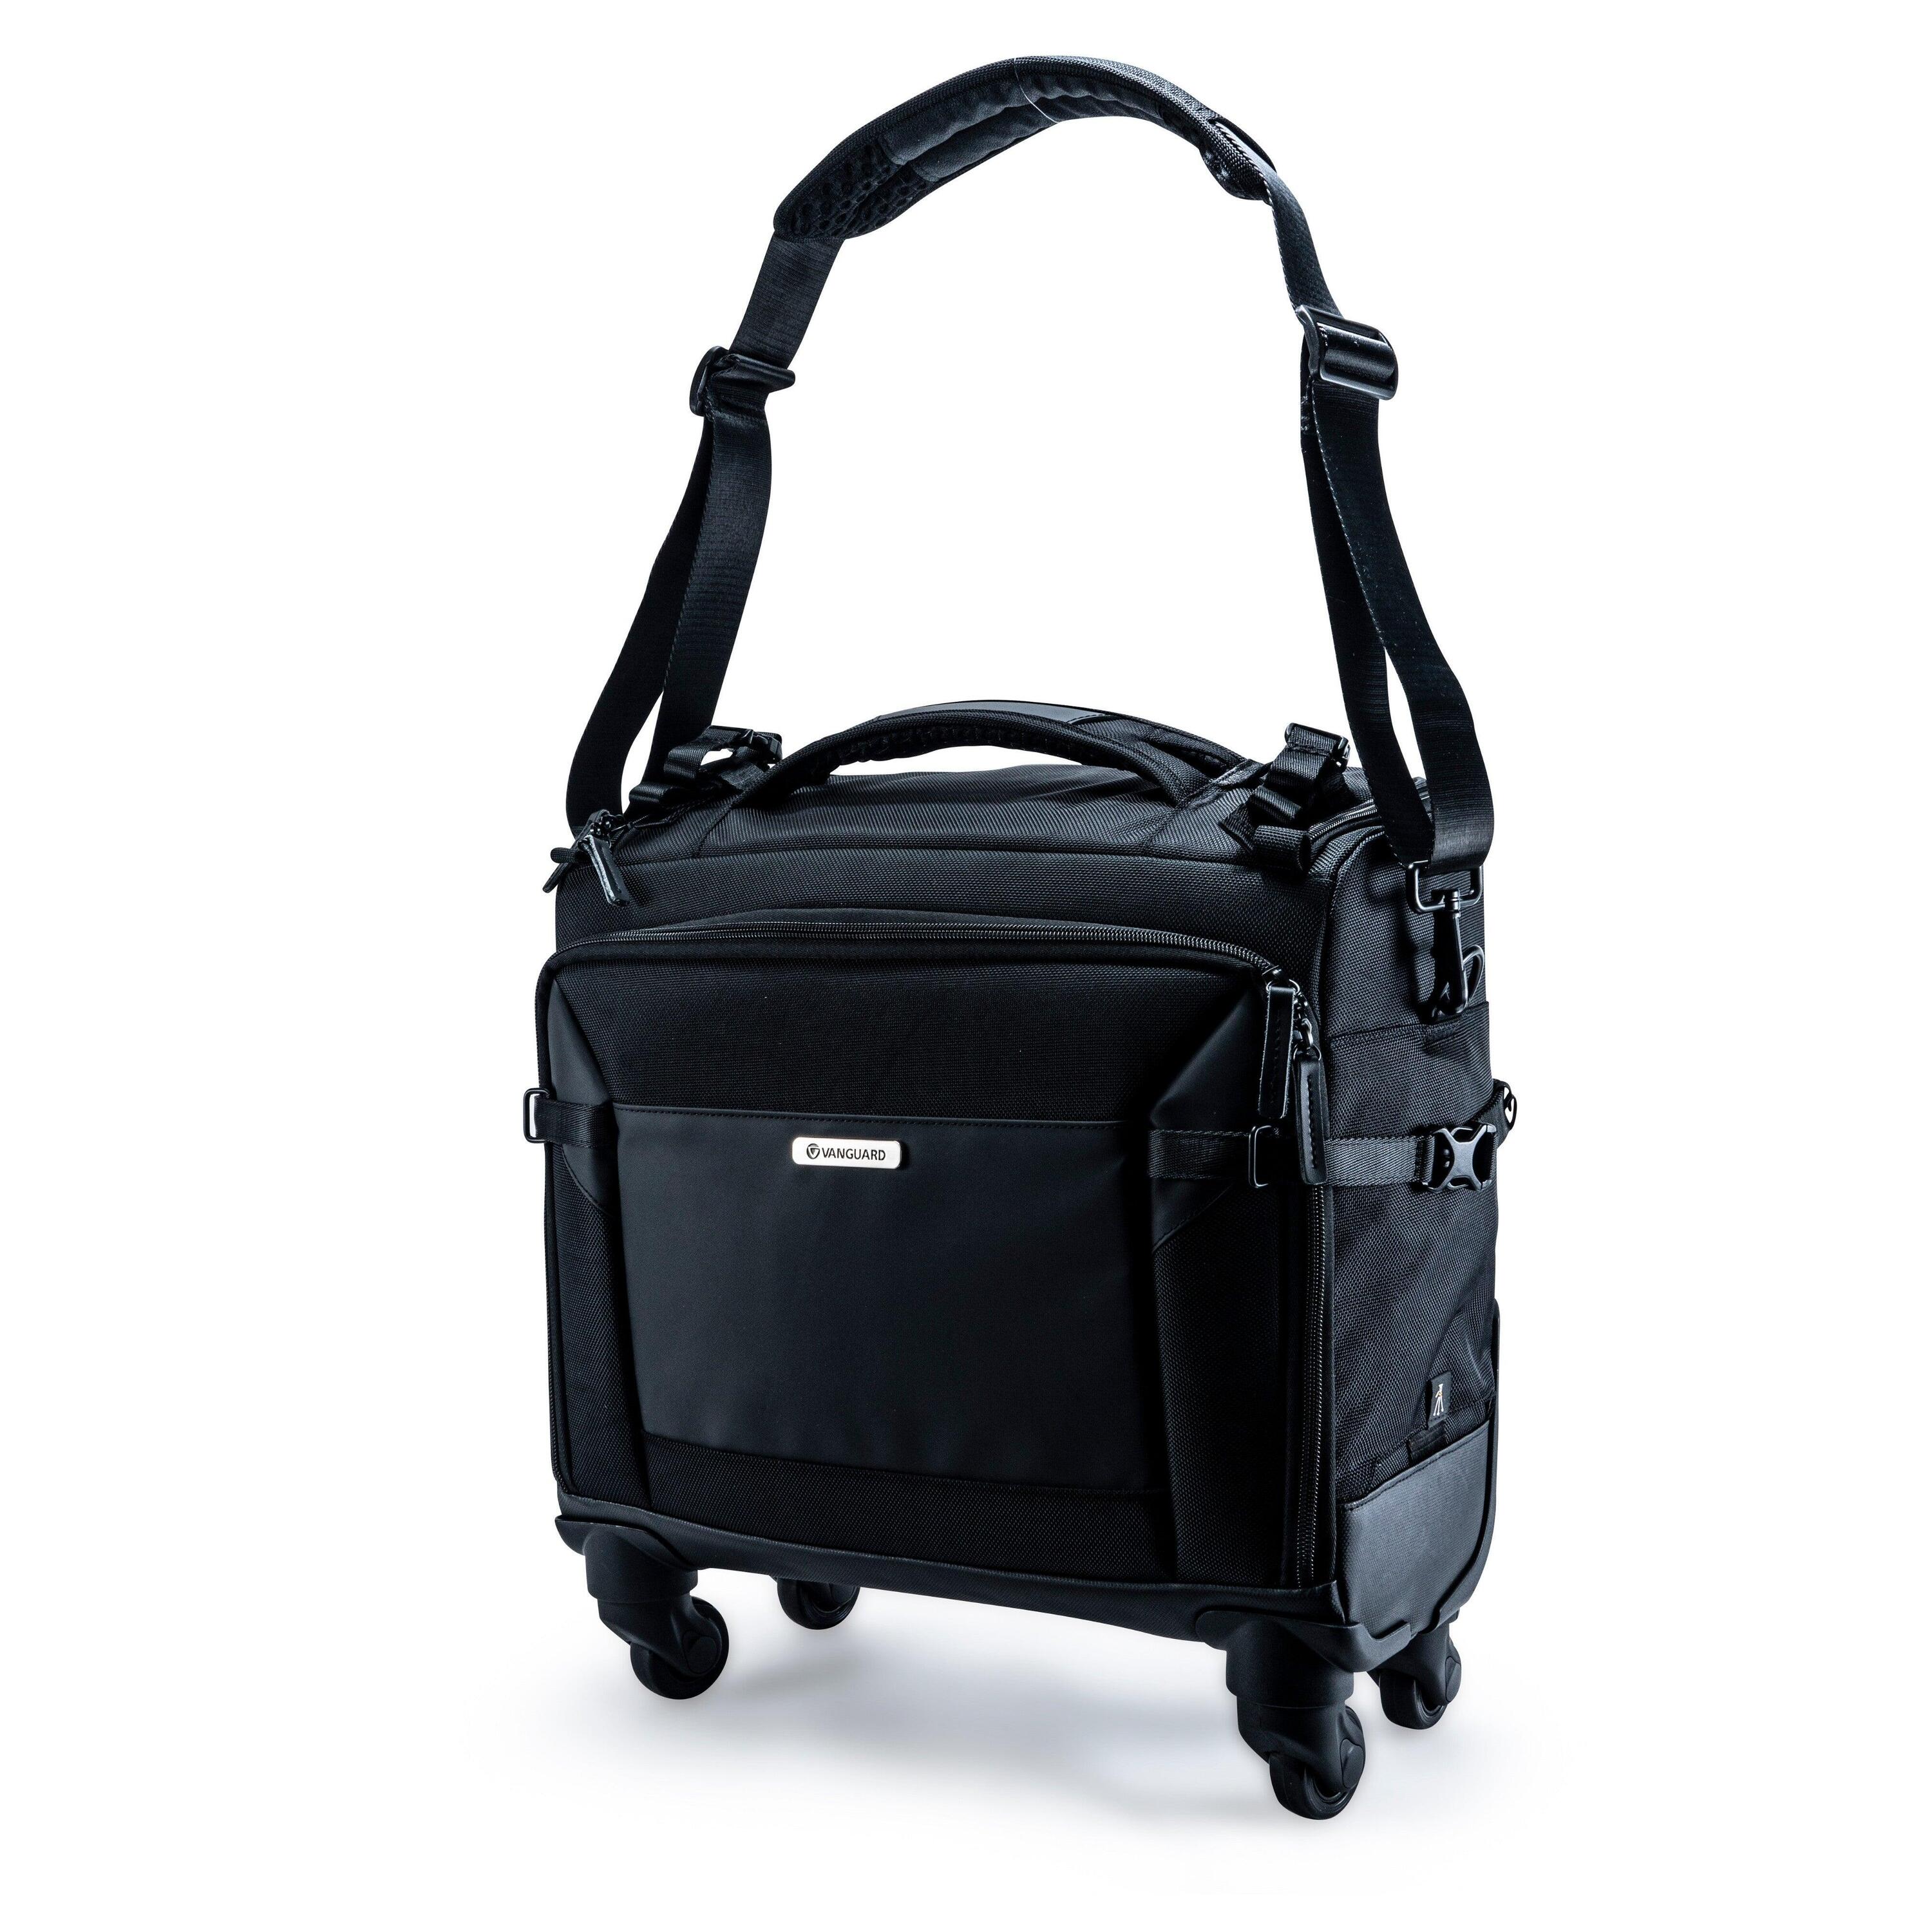 VANGUARD VEO Select 42T BK - Pilot Style Camera Roller/Shoulder Bag - Black